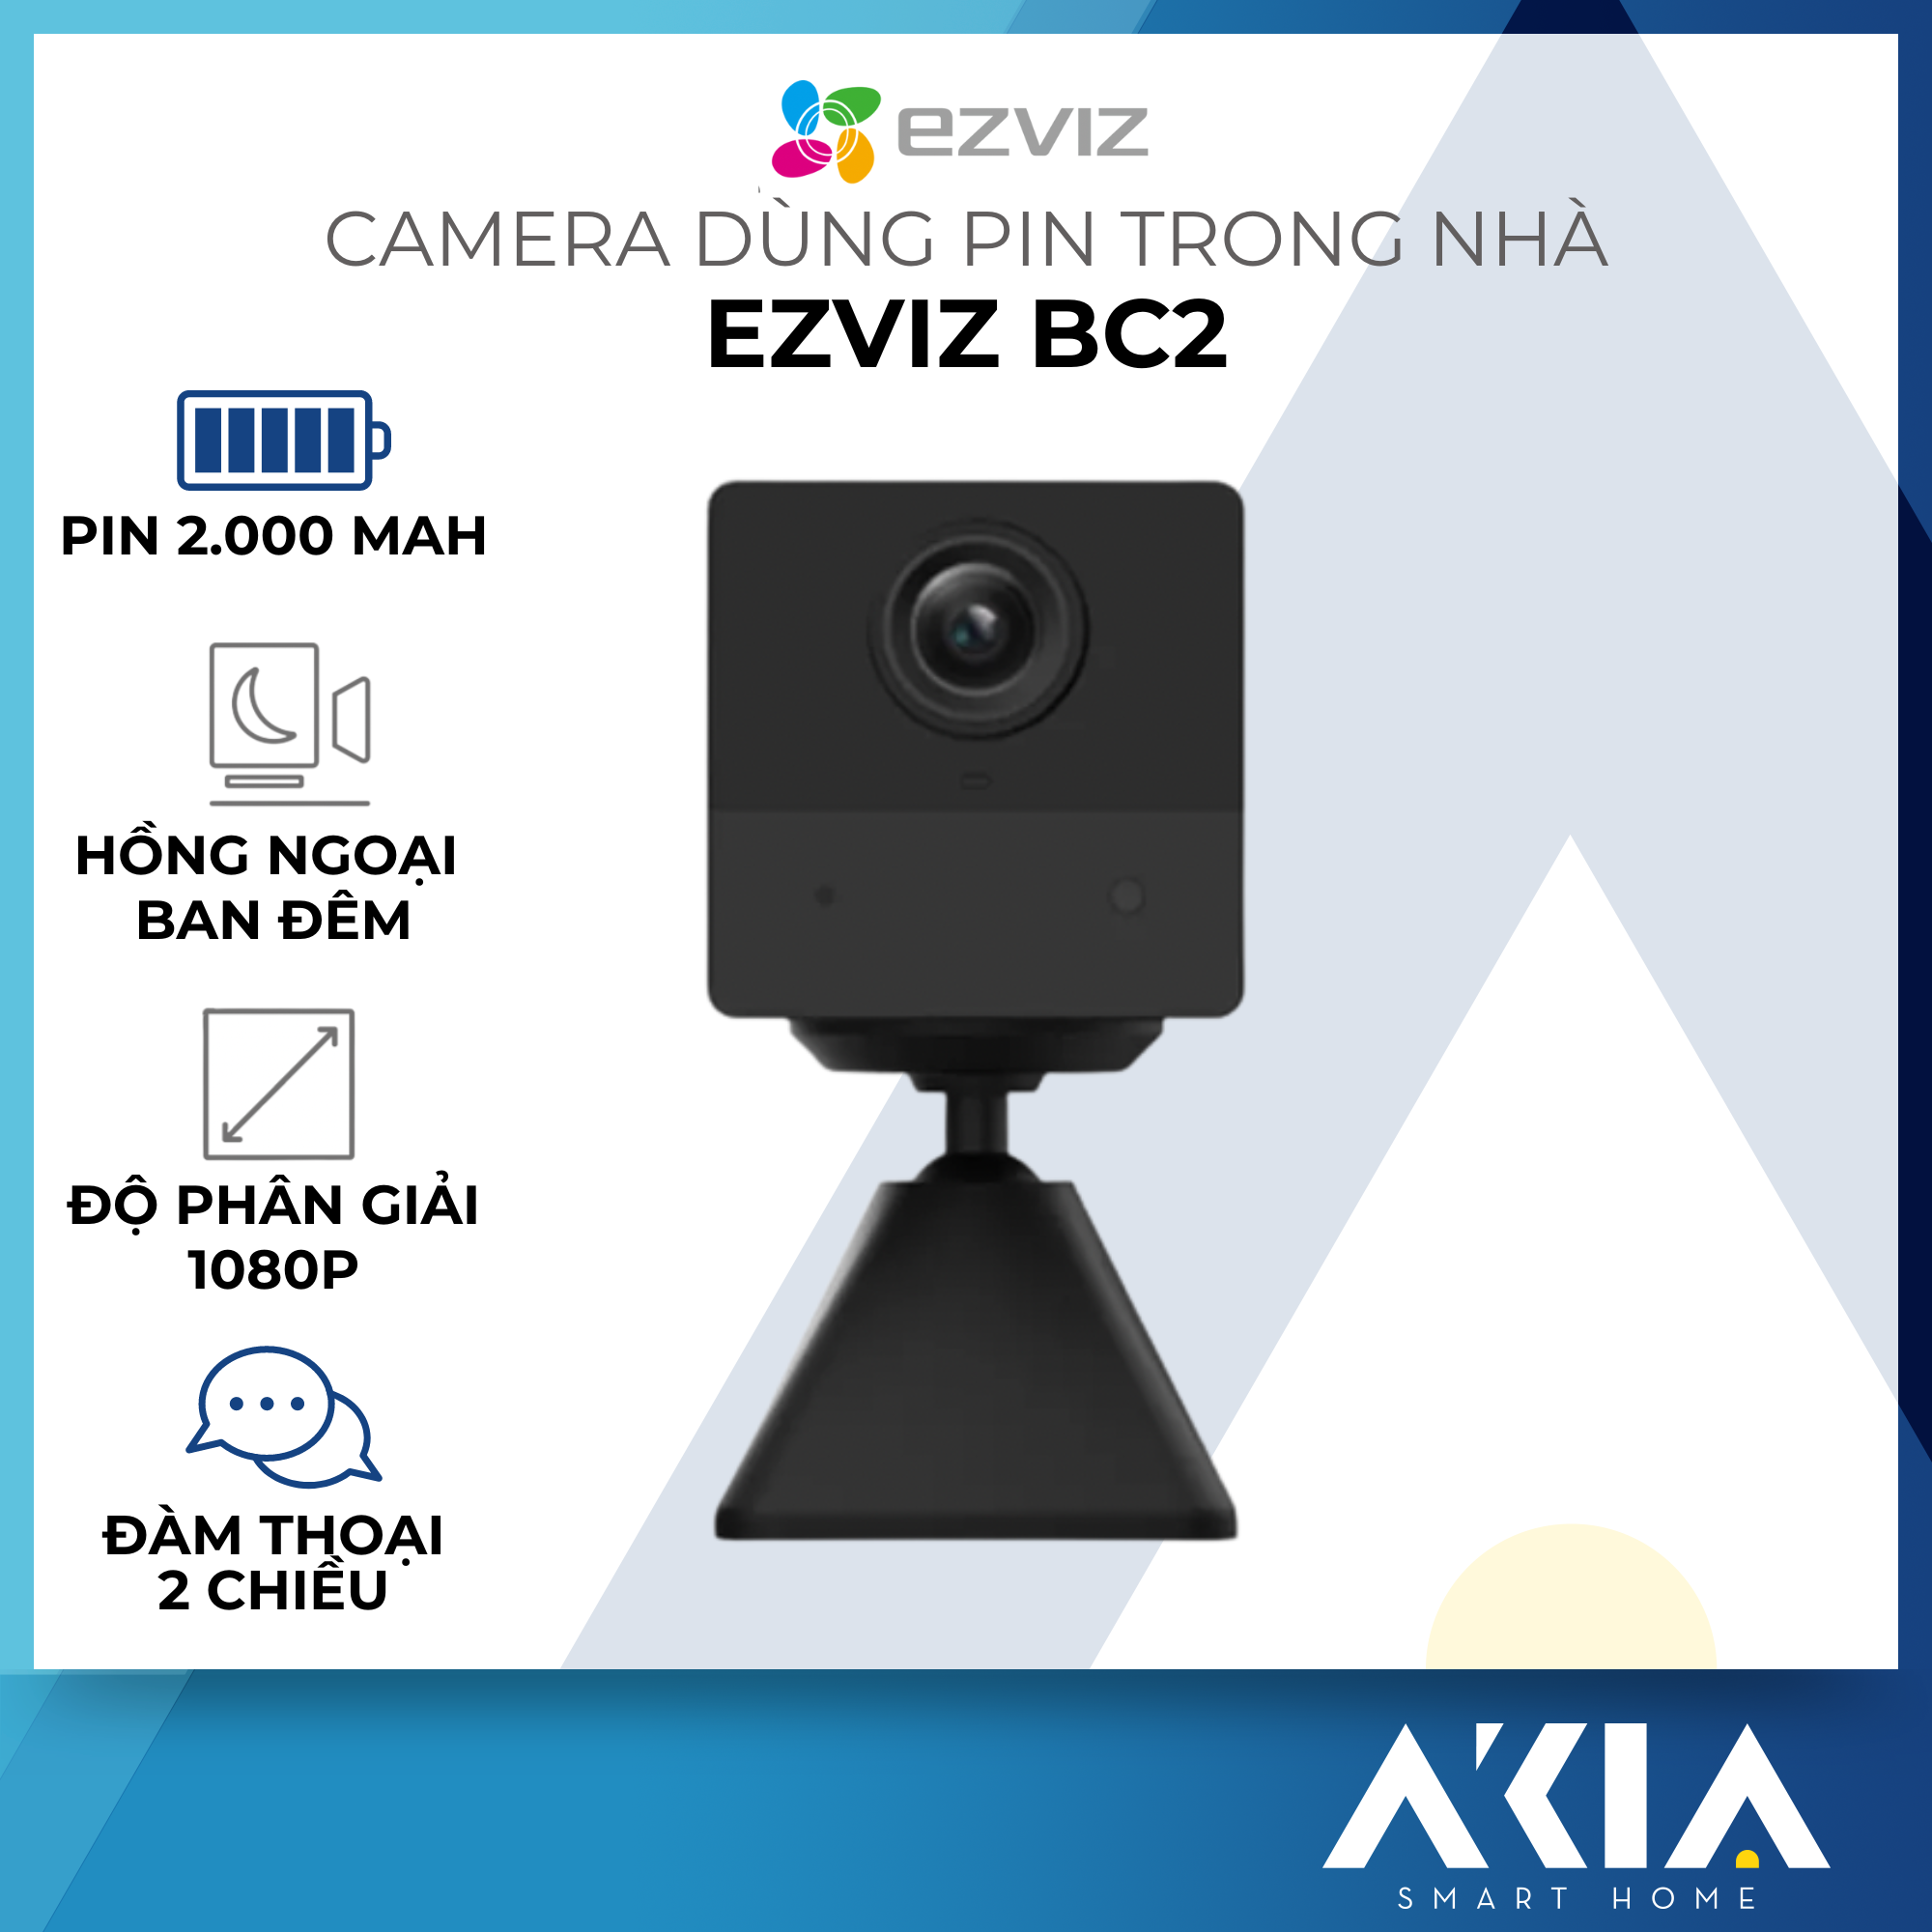 Camera Mini dùng pin Ezviz BC2 - Camera Wifi nhỏ gọn, có đàm thoại 2 chiều, hồng ngoại ban đêm, chuẩn nén H625 - Hàng chính hãng